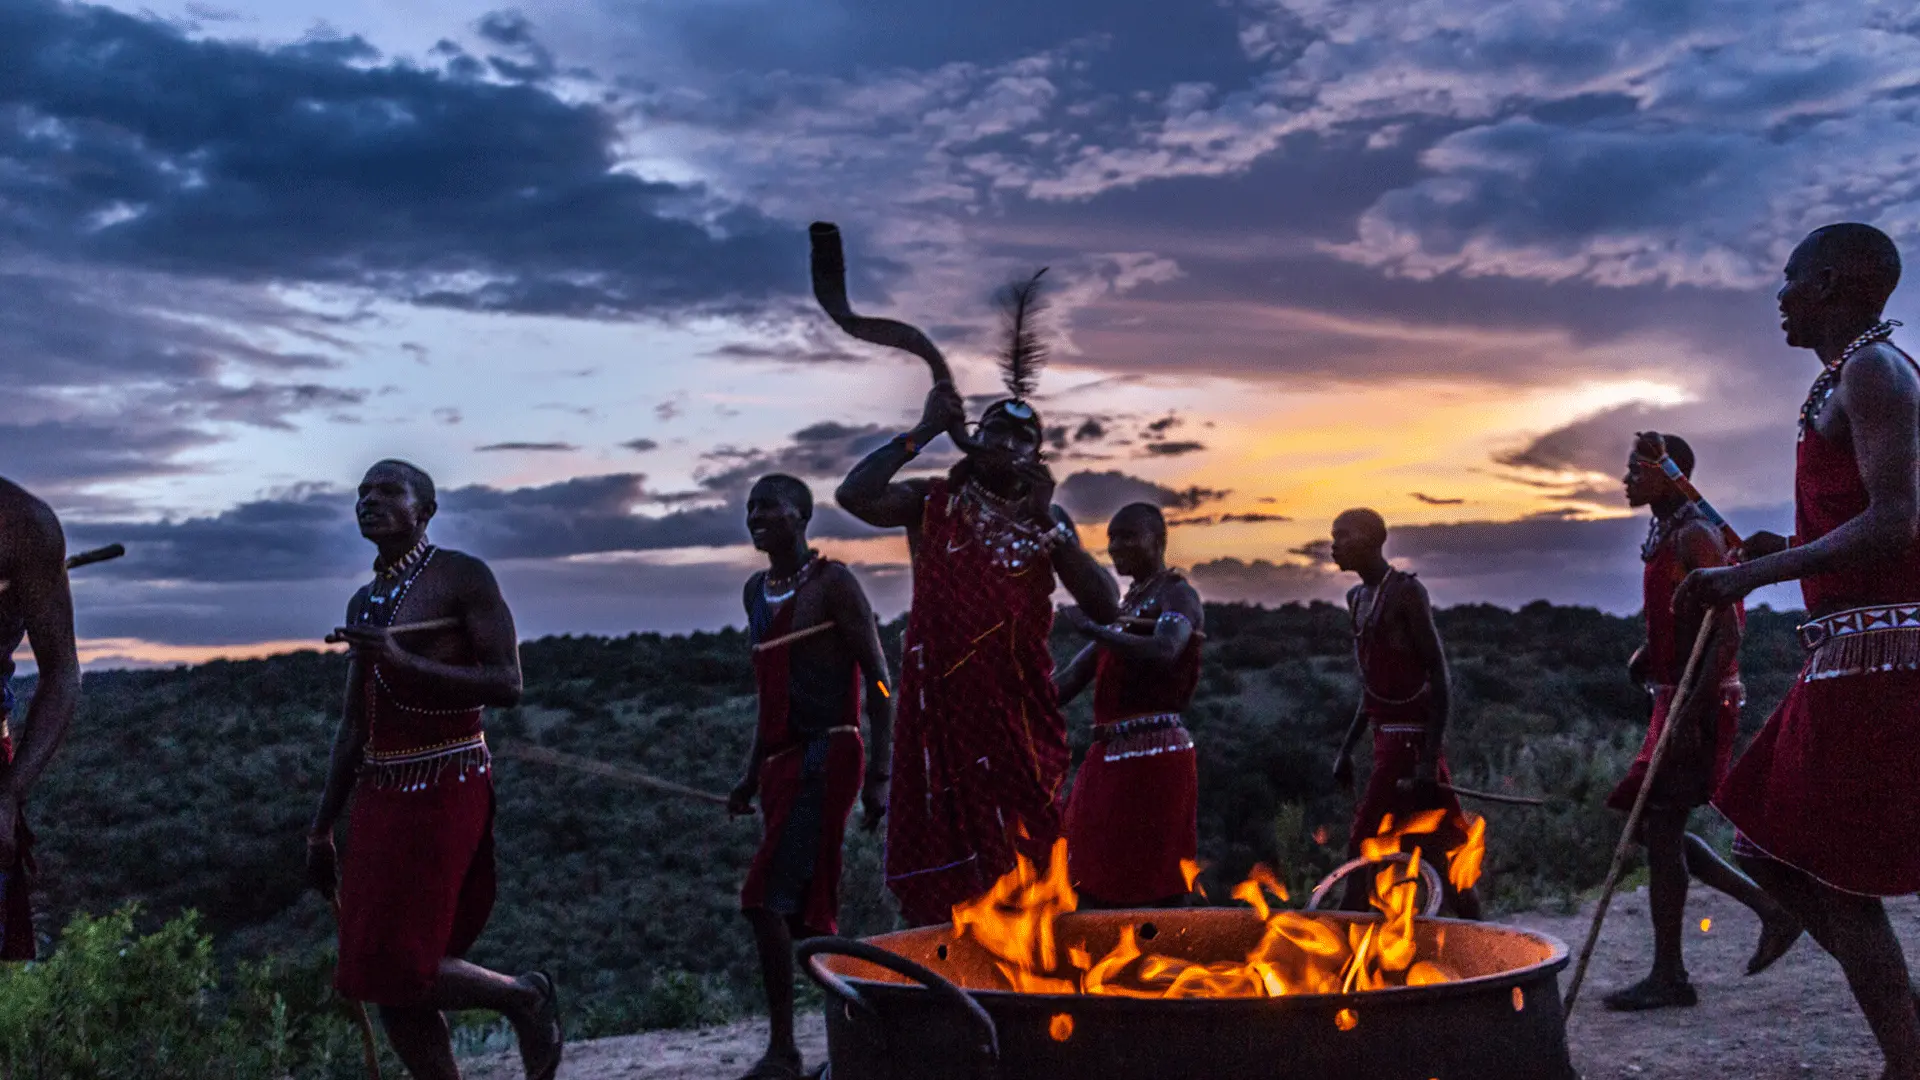 Honeymoon to Kenya - Masai village cultural visits.